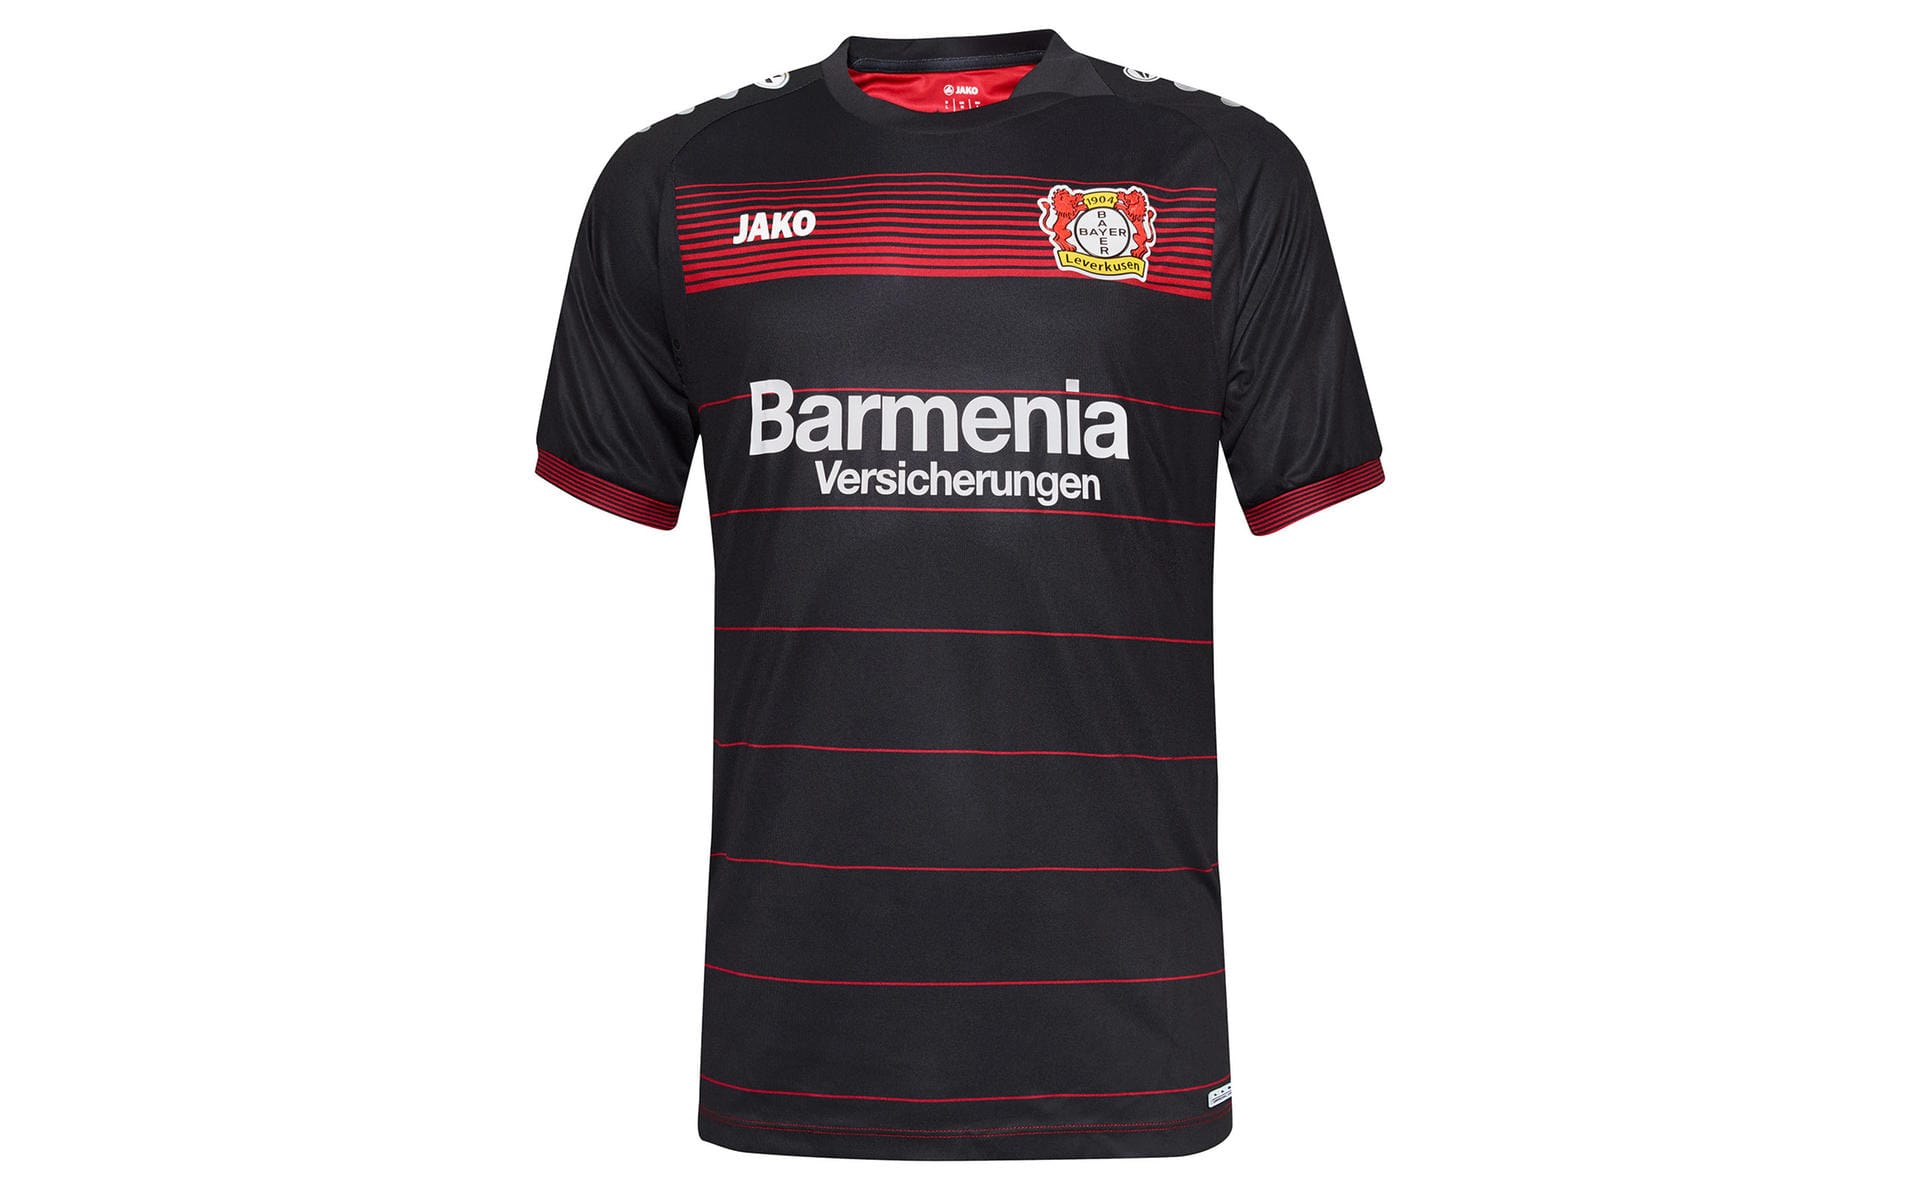 Frischer Sponsor auf neuem Trikot: Bayer Leverkusen beginnt dress-technisch den Neuanfang. Dabei ergänzen den in schwarz gehaltenen Stoff rote Querstreifen, die optisch etwas Licht in die Dunkelheit bringen.